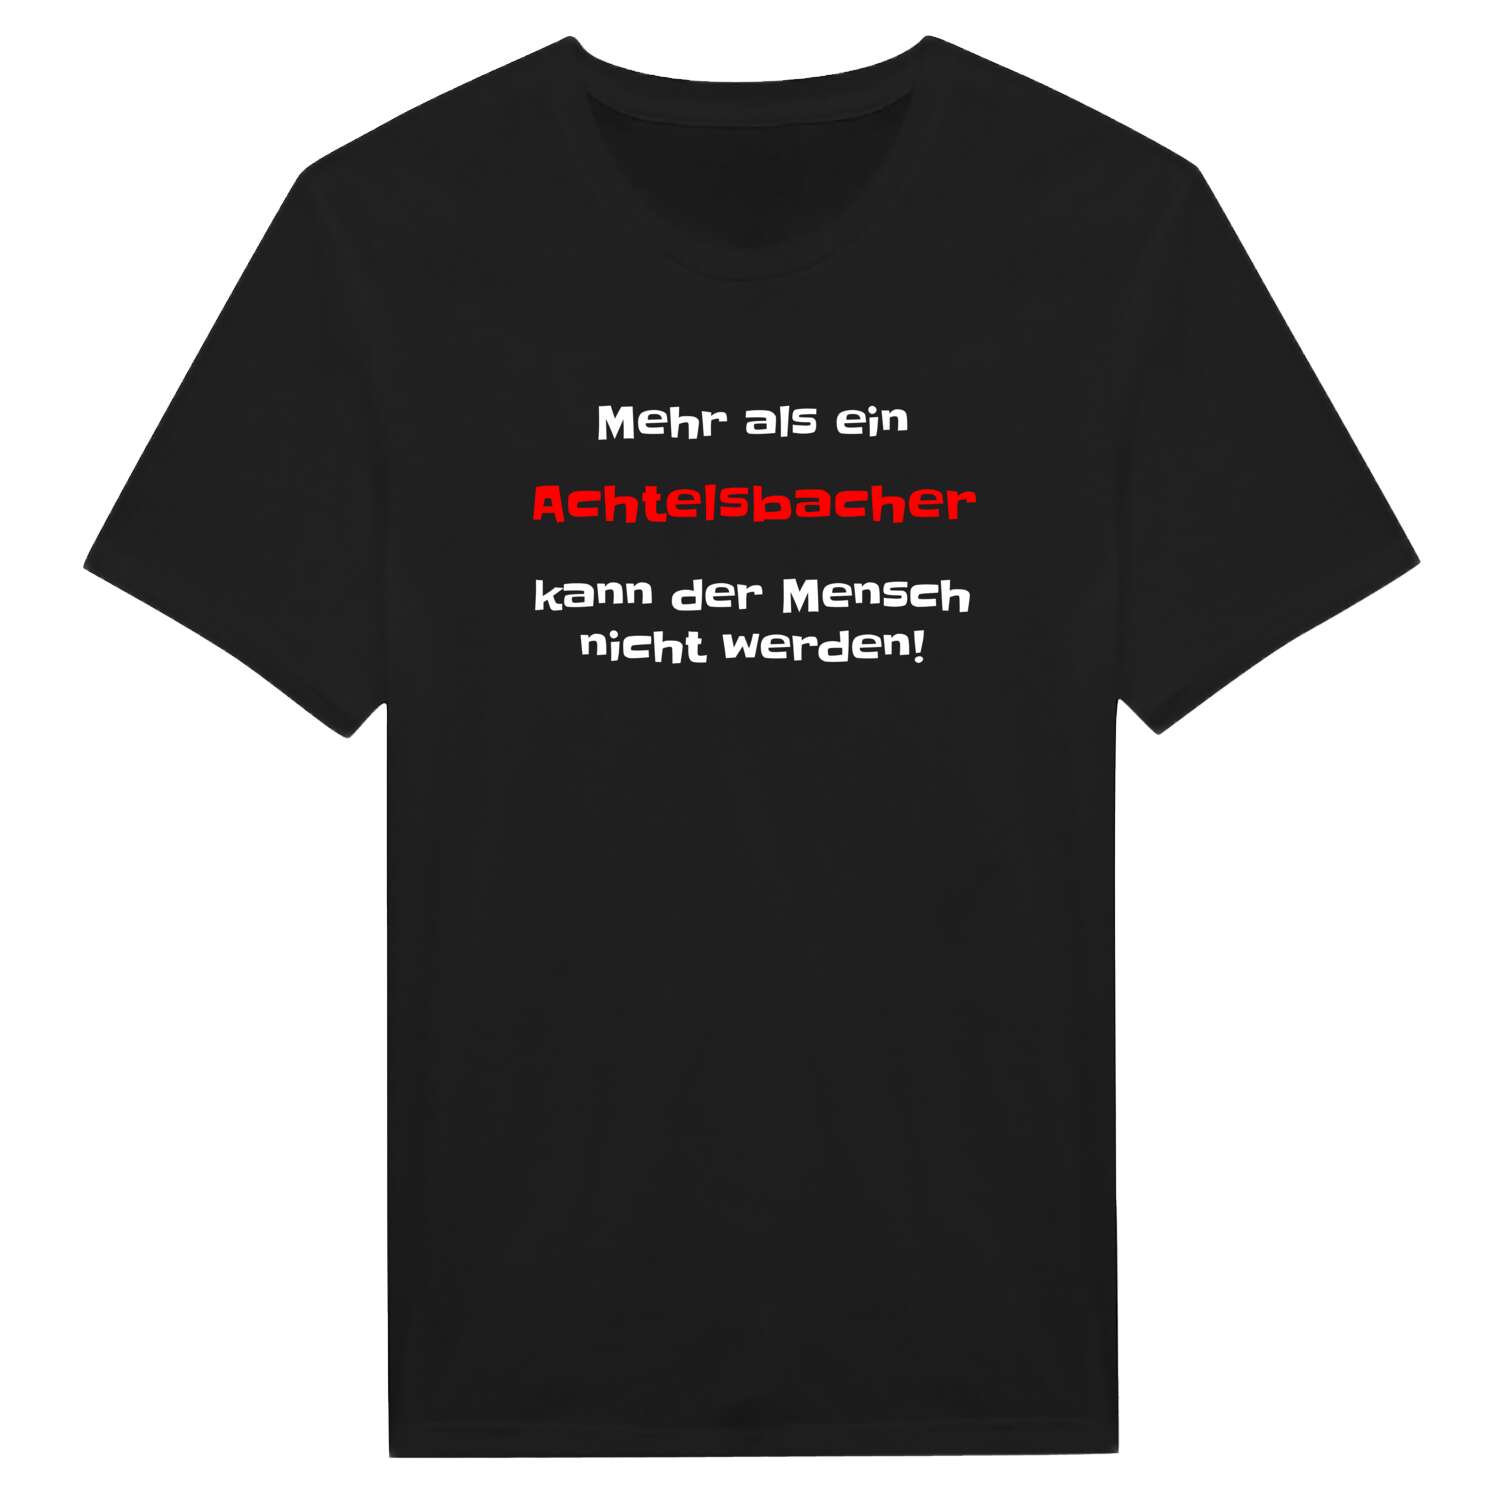 Achtelsbach T-Shirt »Mehr als ein«